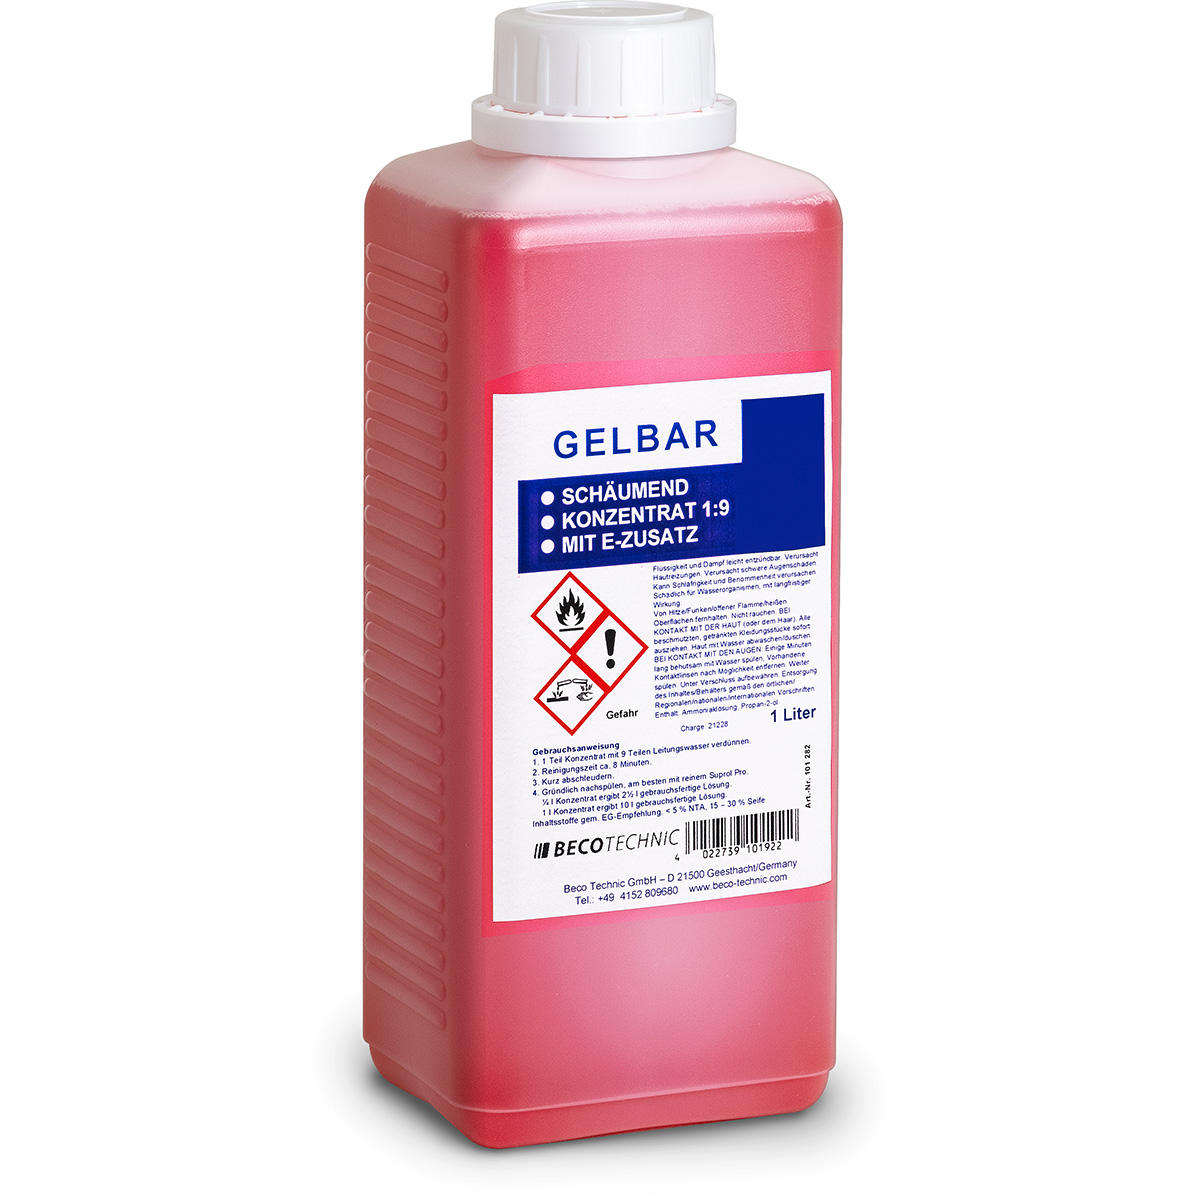 Gelbar solution 1:9 concentrate à 5 litre